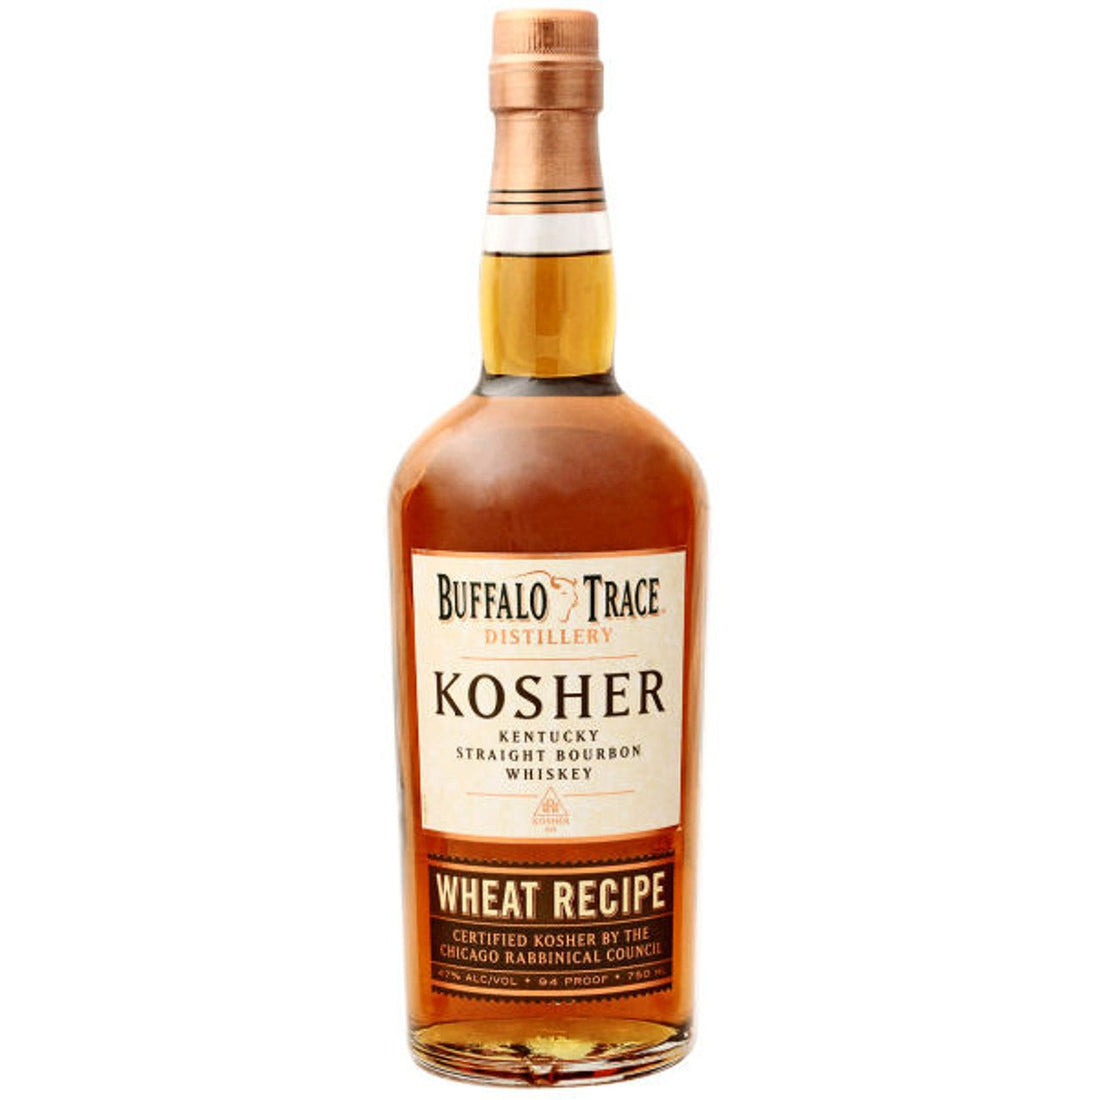 Buffalo Trace Kosher Wheat Recipe Kentucky Straight Bourbon Whiskey - ShopBourbon.com